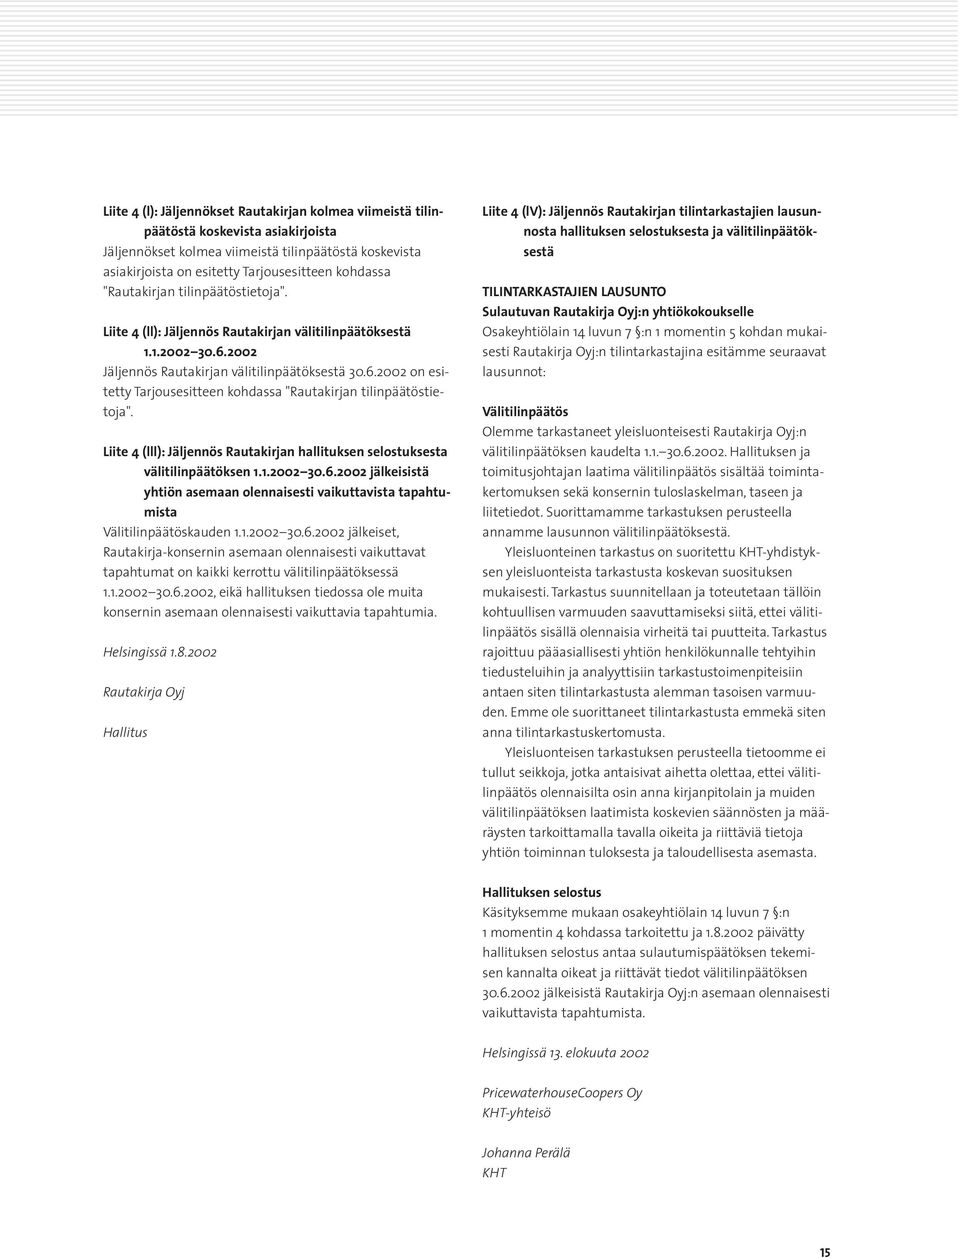 Liite 4 (lll): Jäljennös Rautakirjan hallituksen selostuksesta välitilinpäätöksen 1.1.2002 30.6.